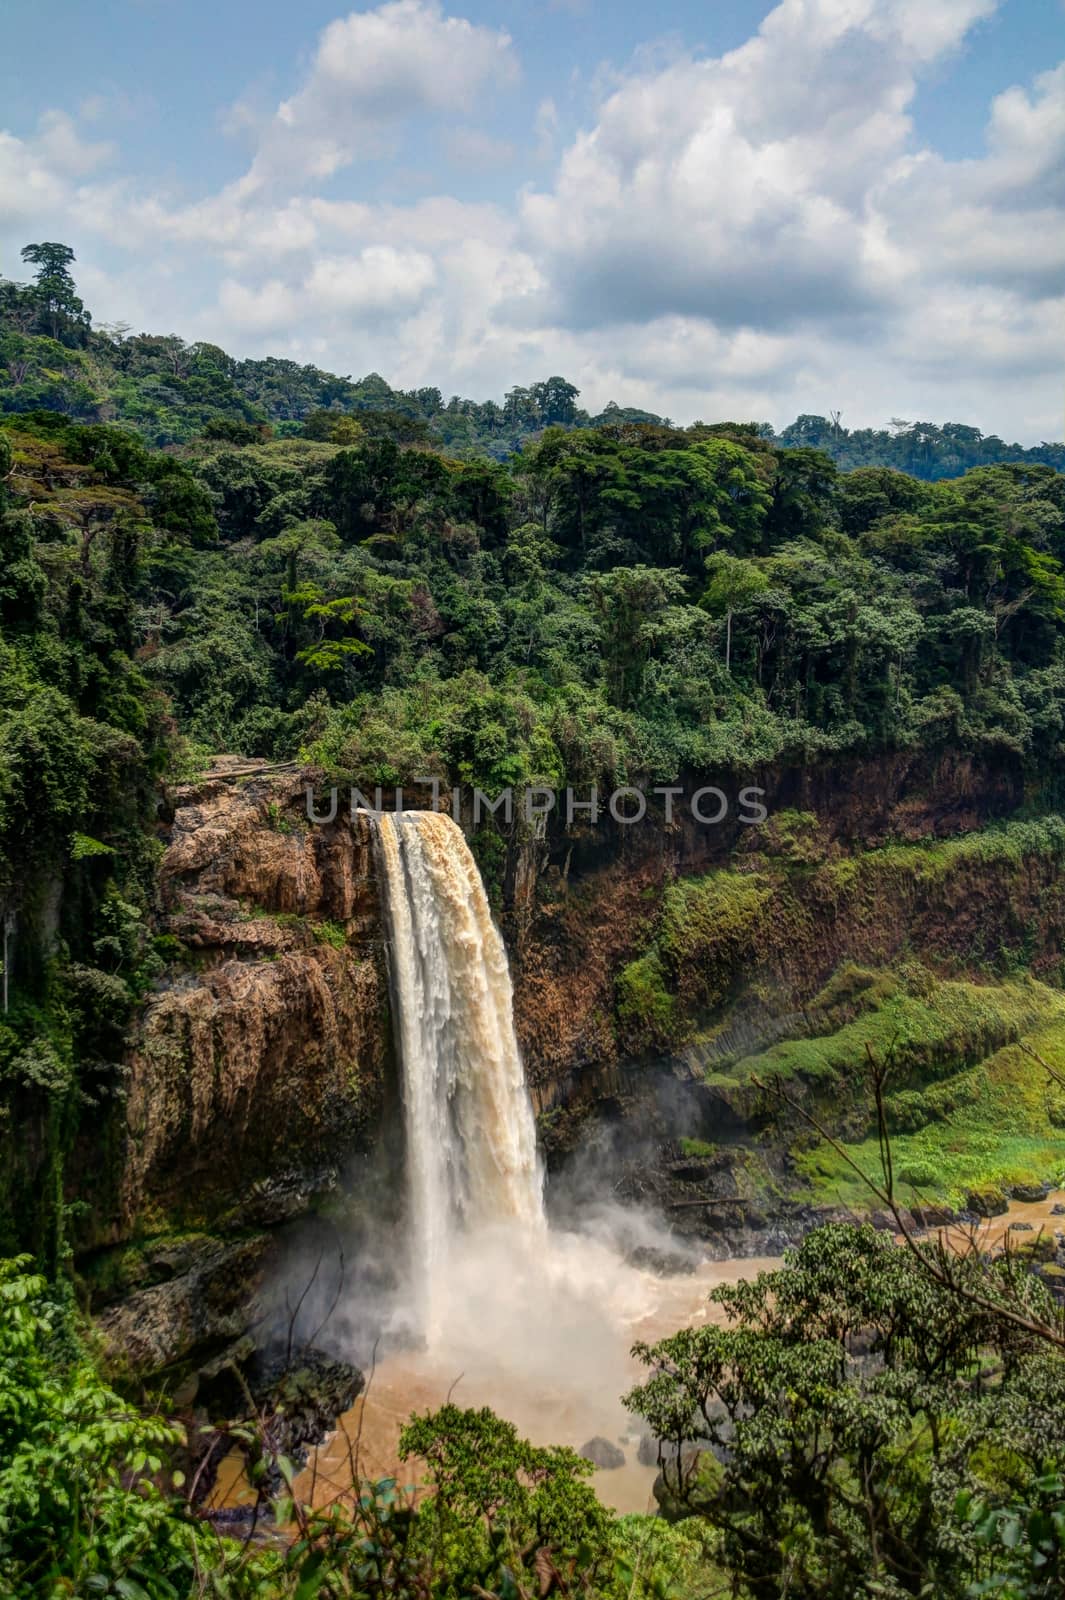 Panorama of Ekom waterfall by homocosmicos